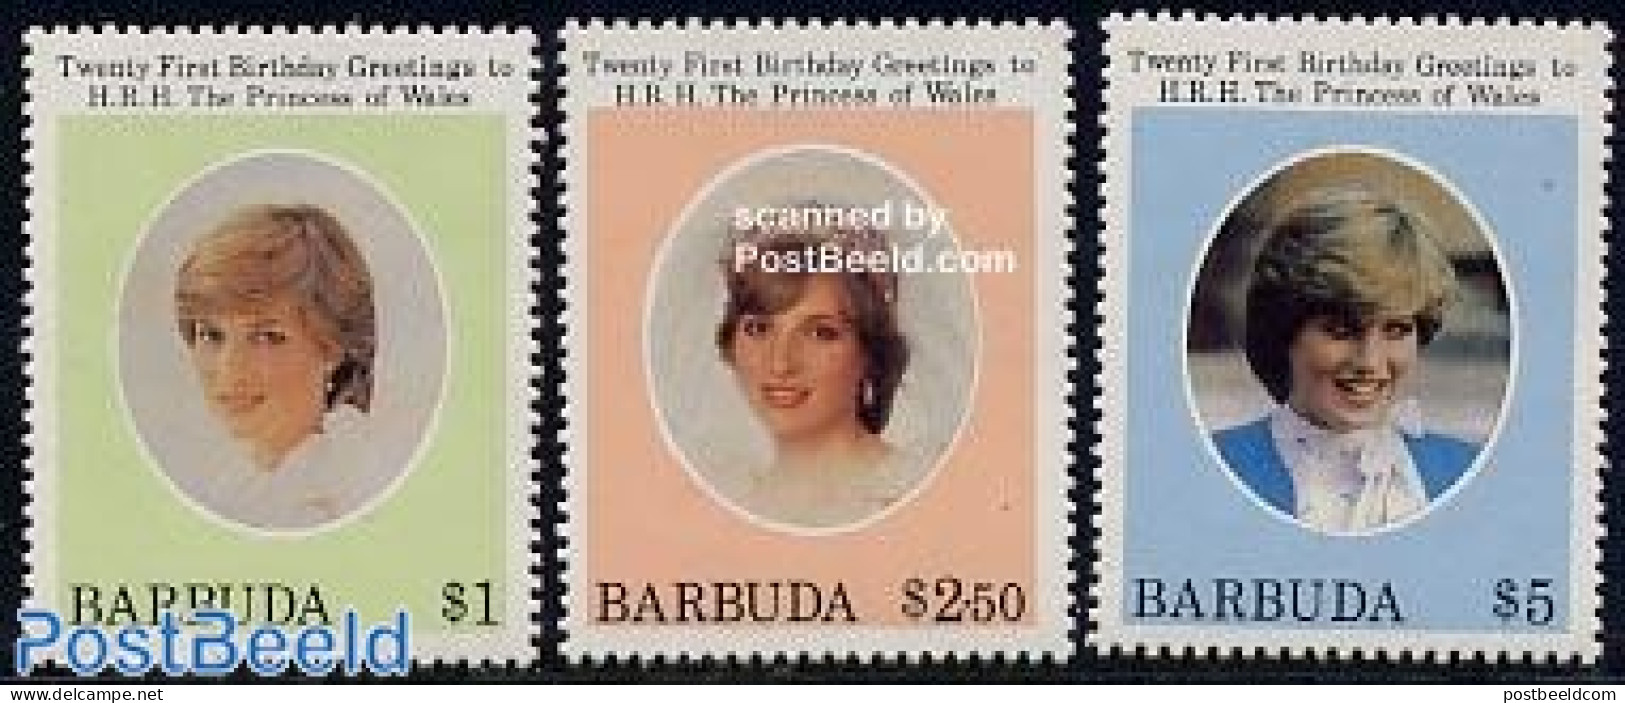 Barbuda 1982 Diana 21st Birthday 3v, Mint NH, History - Charles & Diana - Kings & Queens (Royalty) - Royalties, Royals